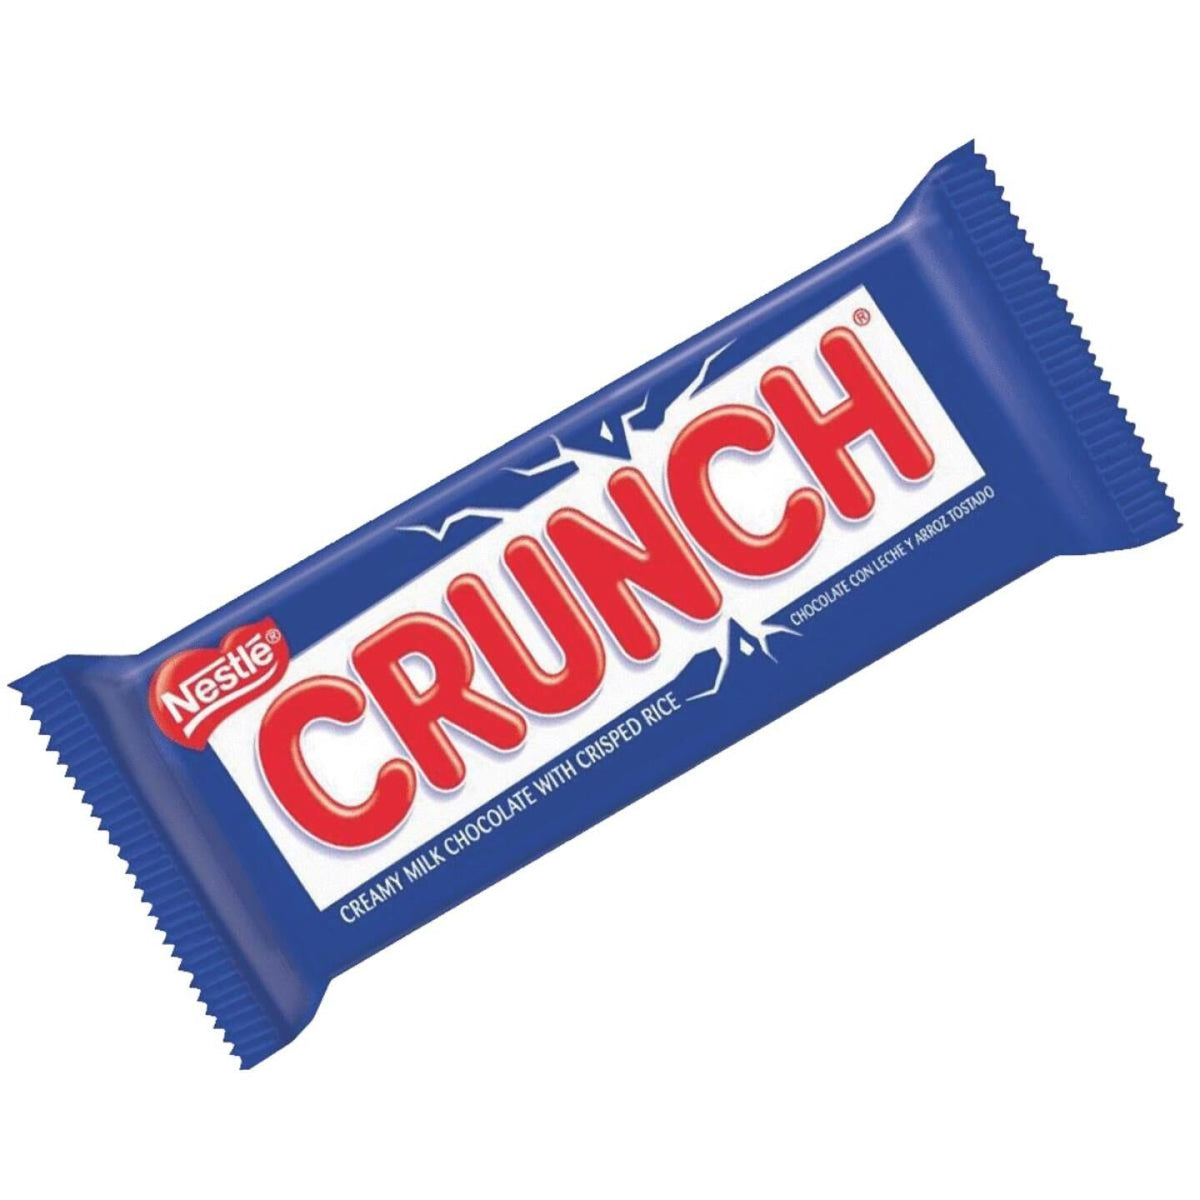 nestle crunch bar logo